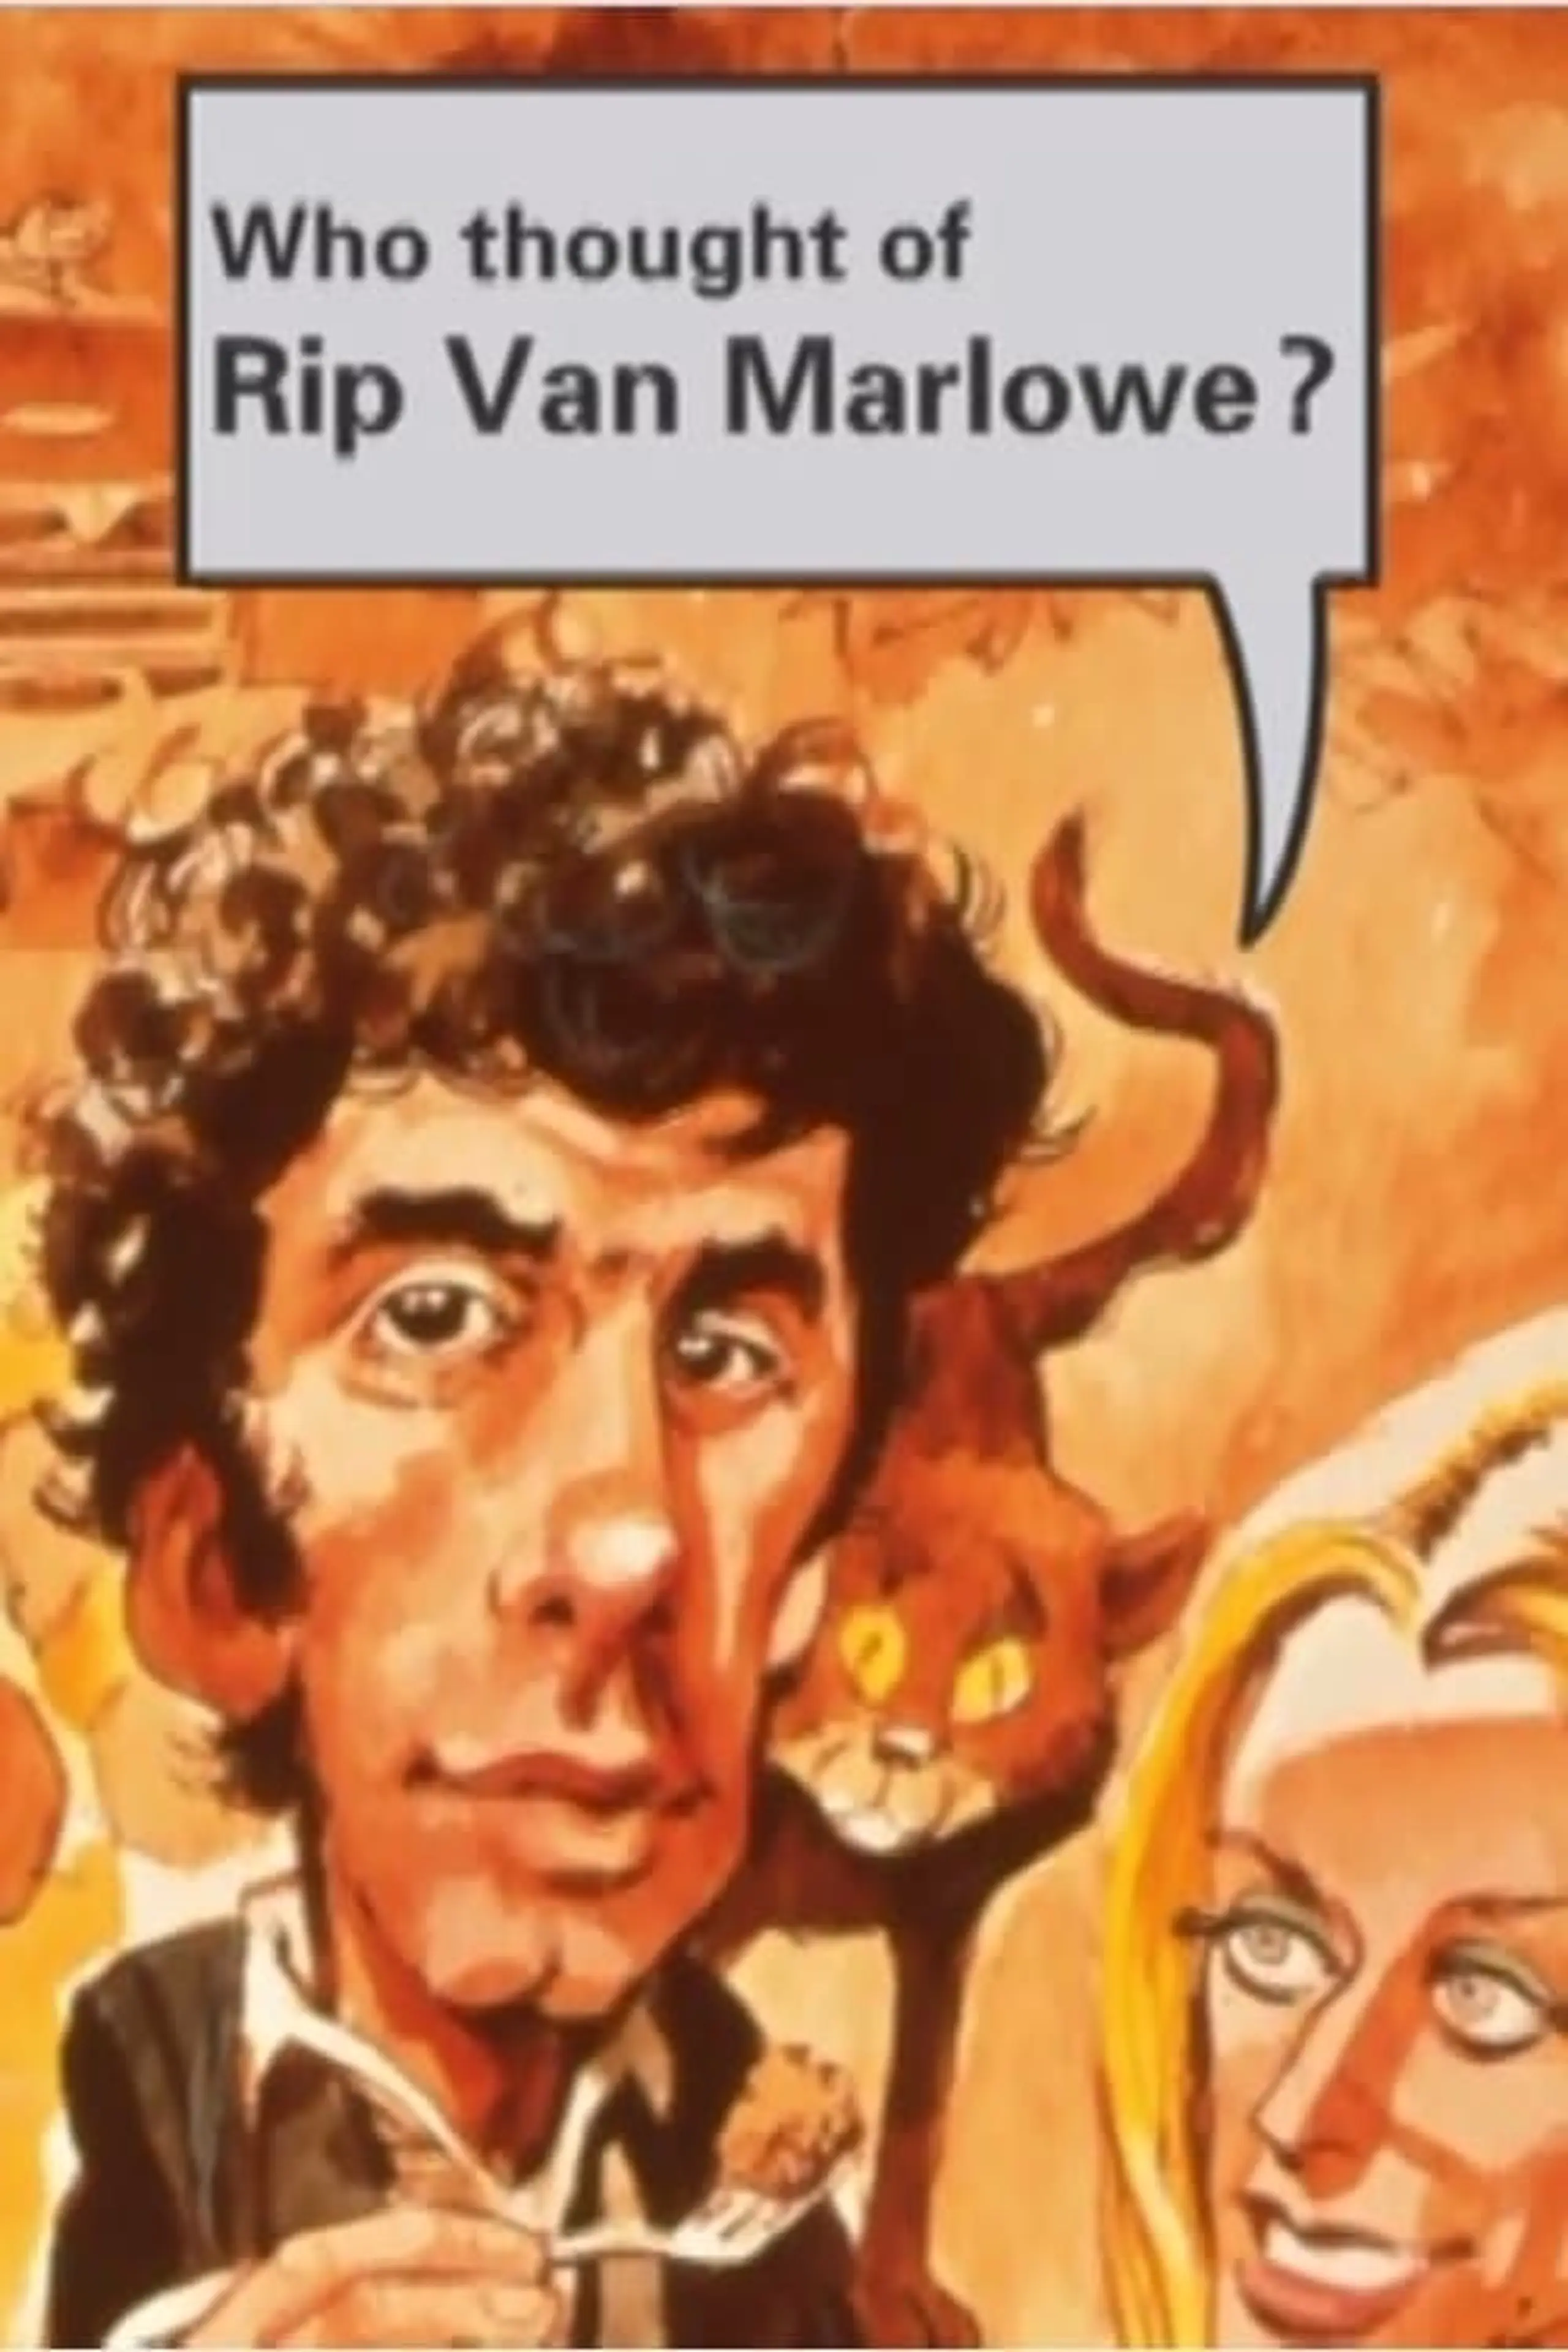 Rip Van Marlowe